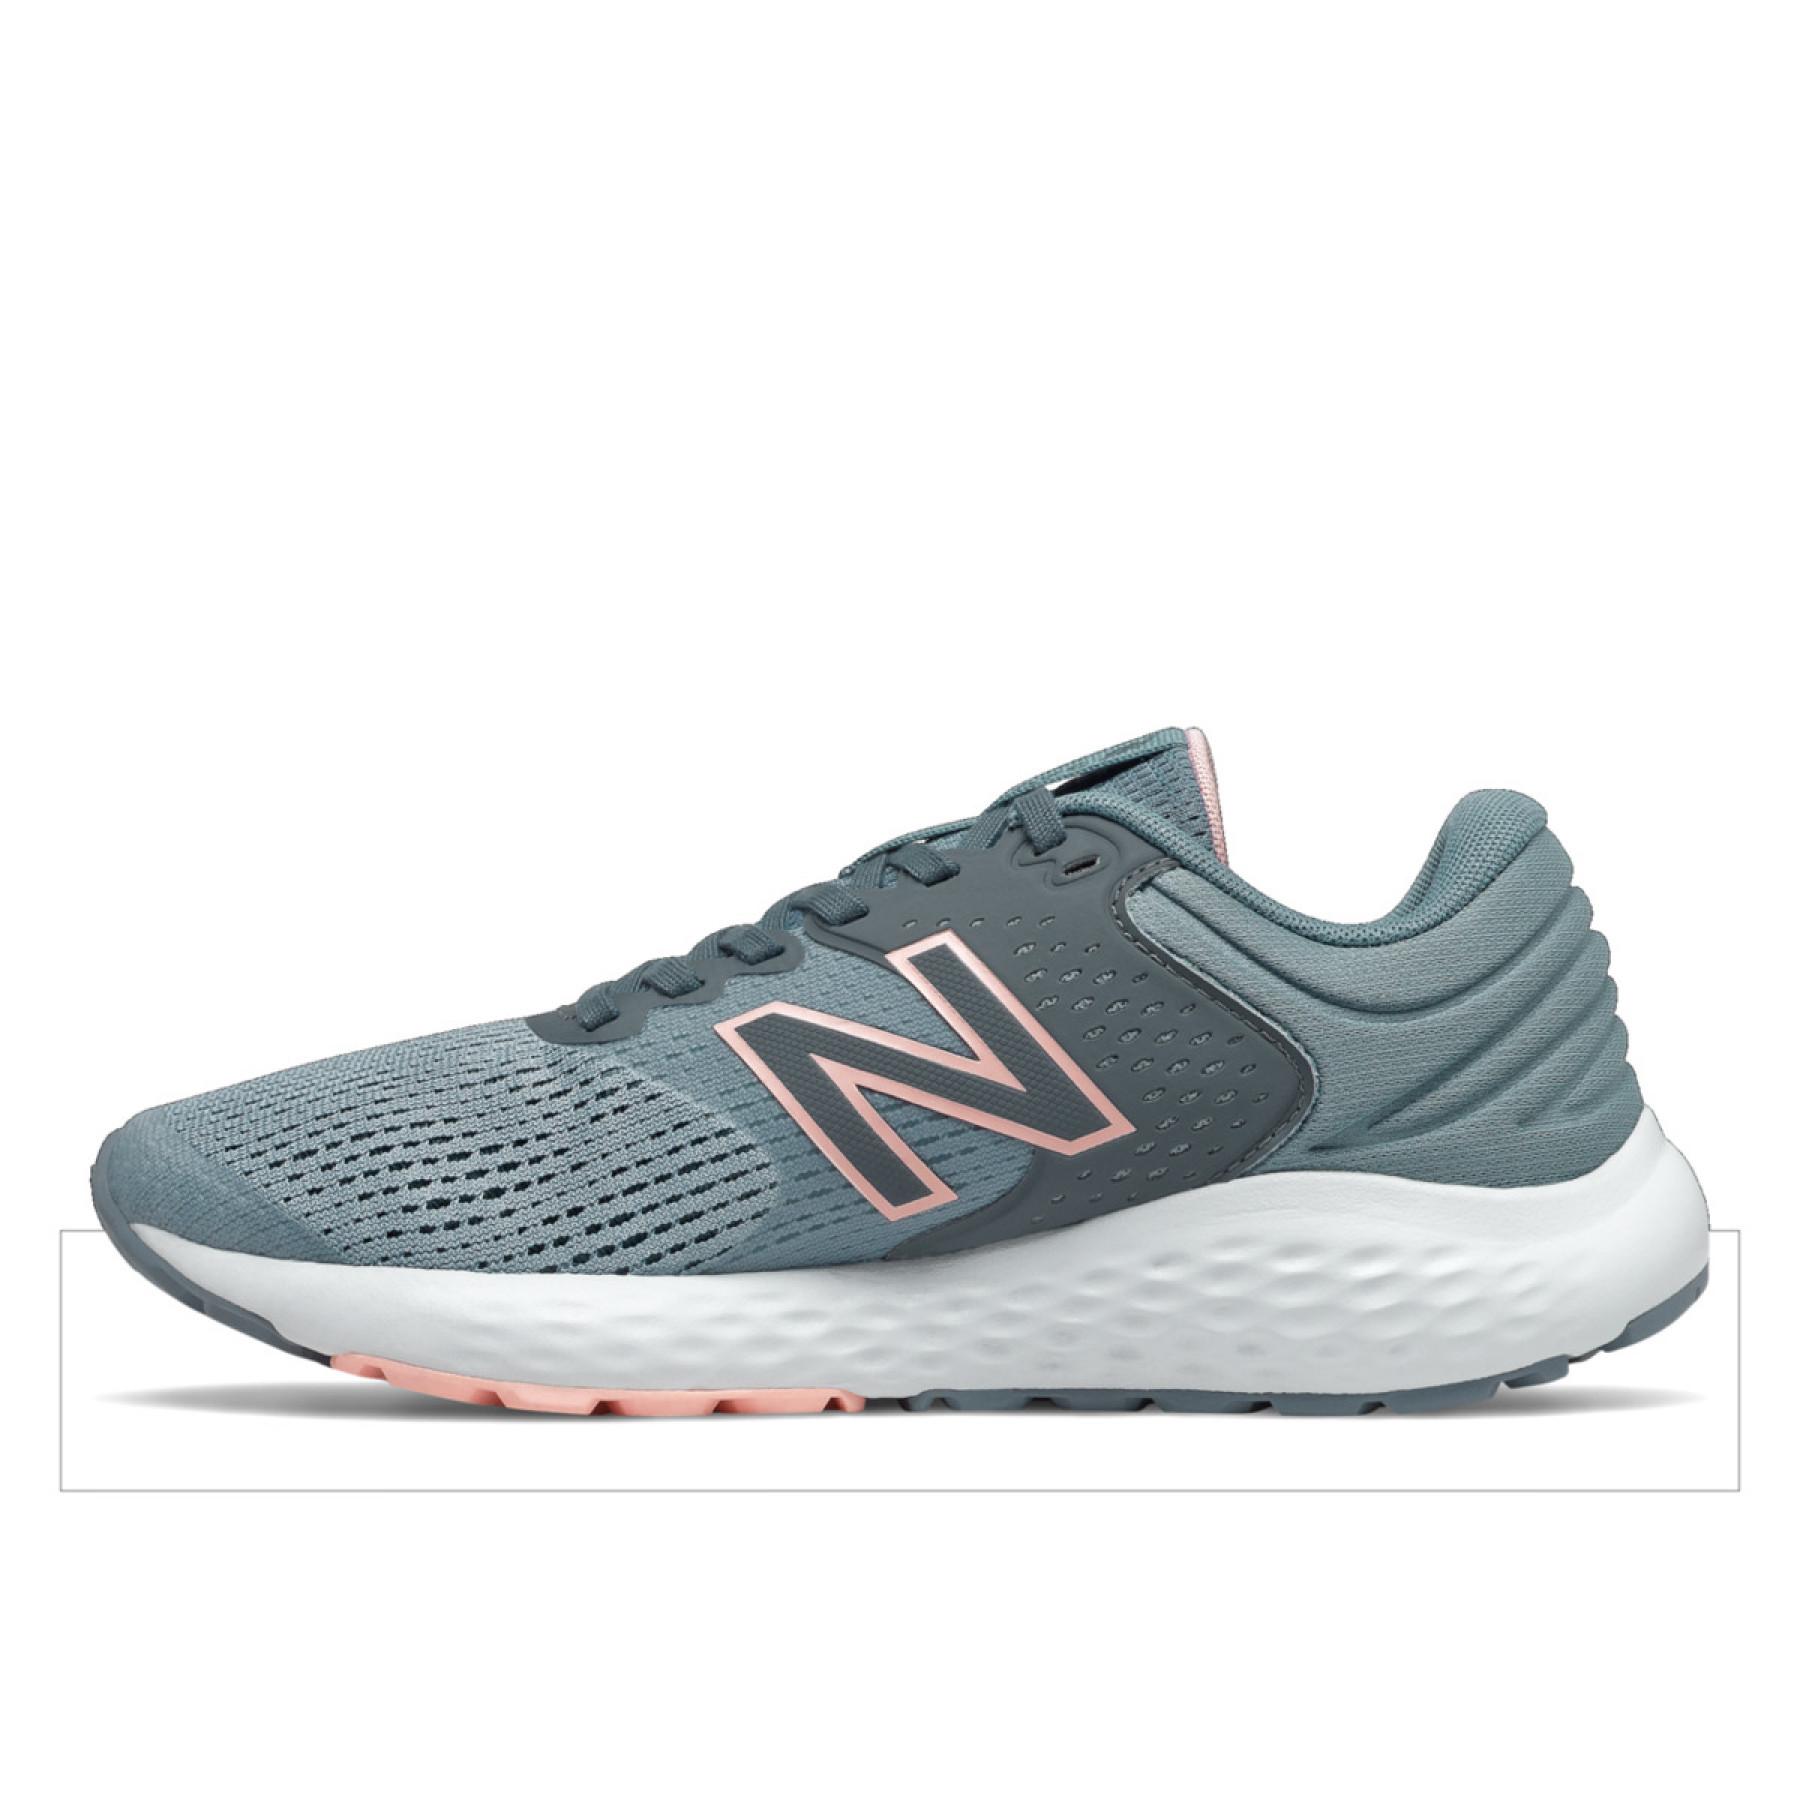 Chaussures de running femme New Balance 520v7